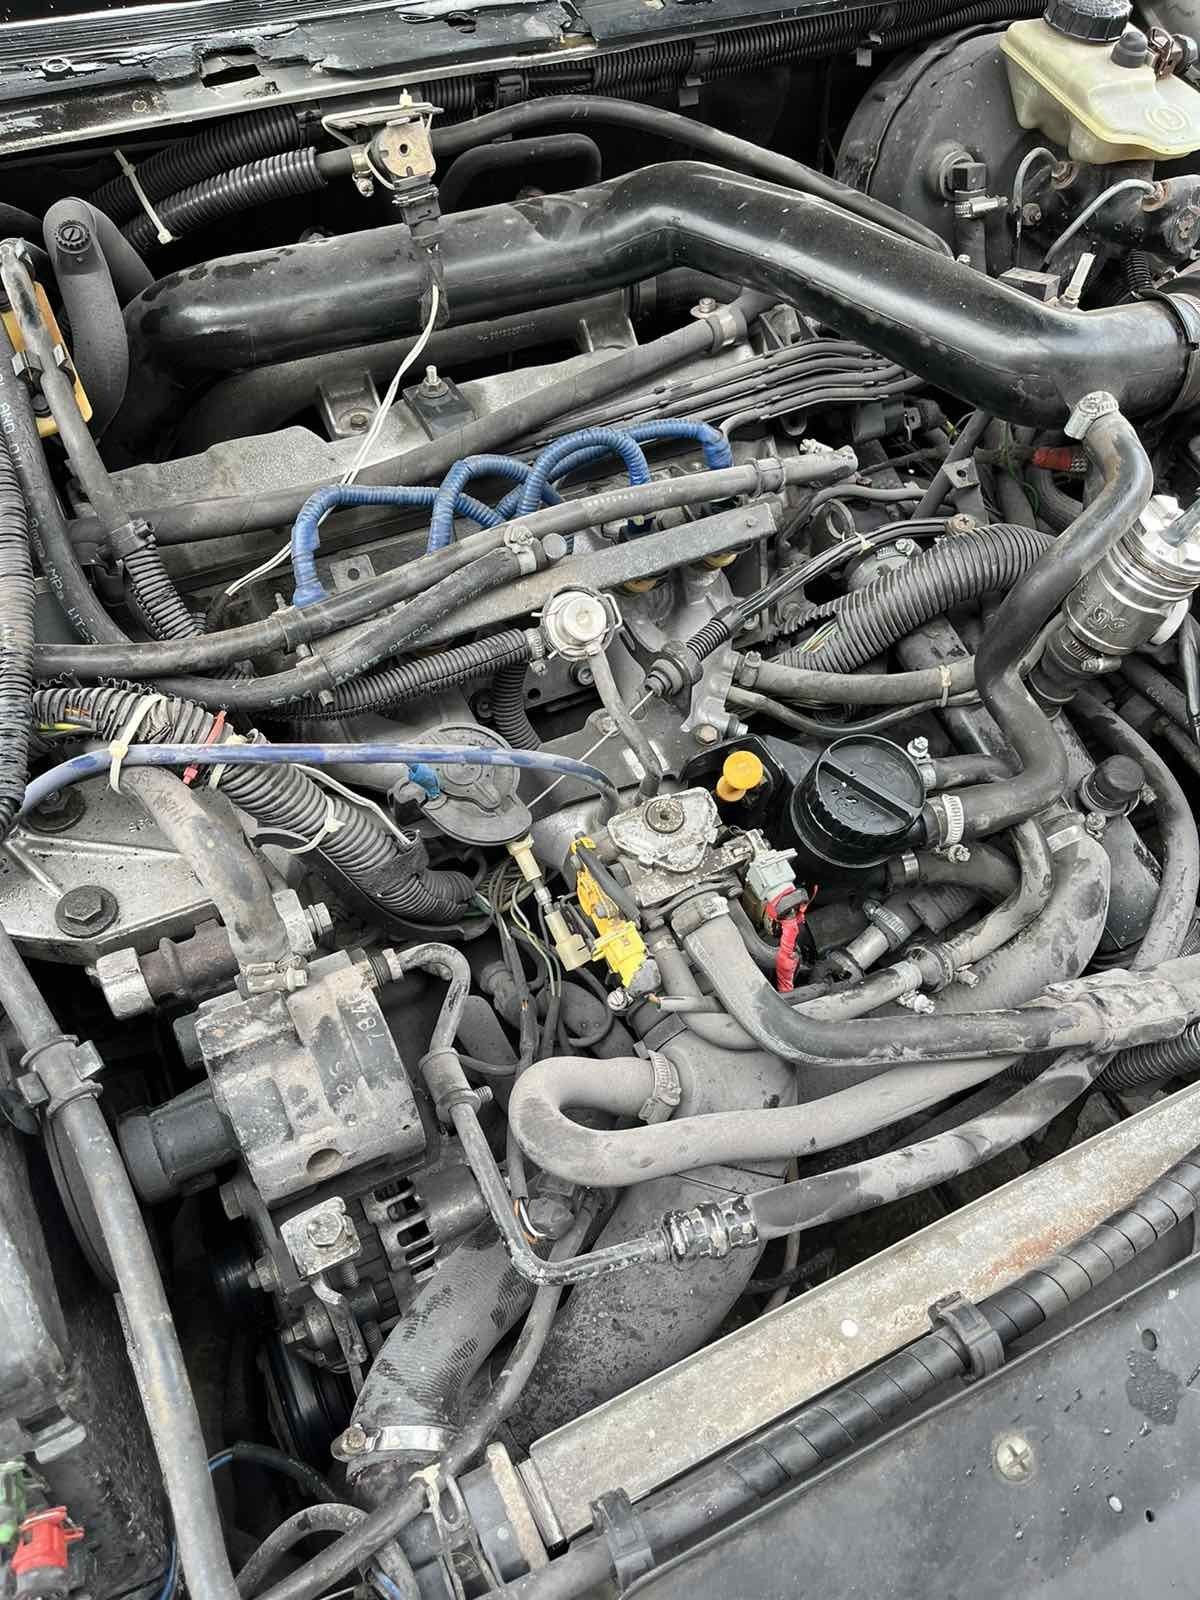 Peugeot 605 turbo